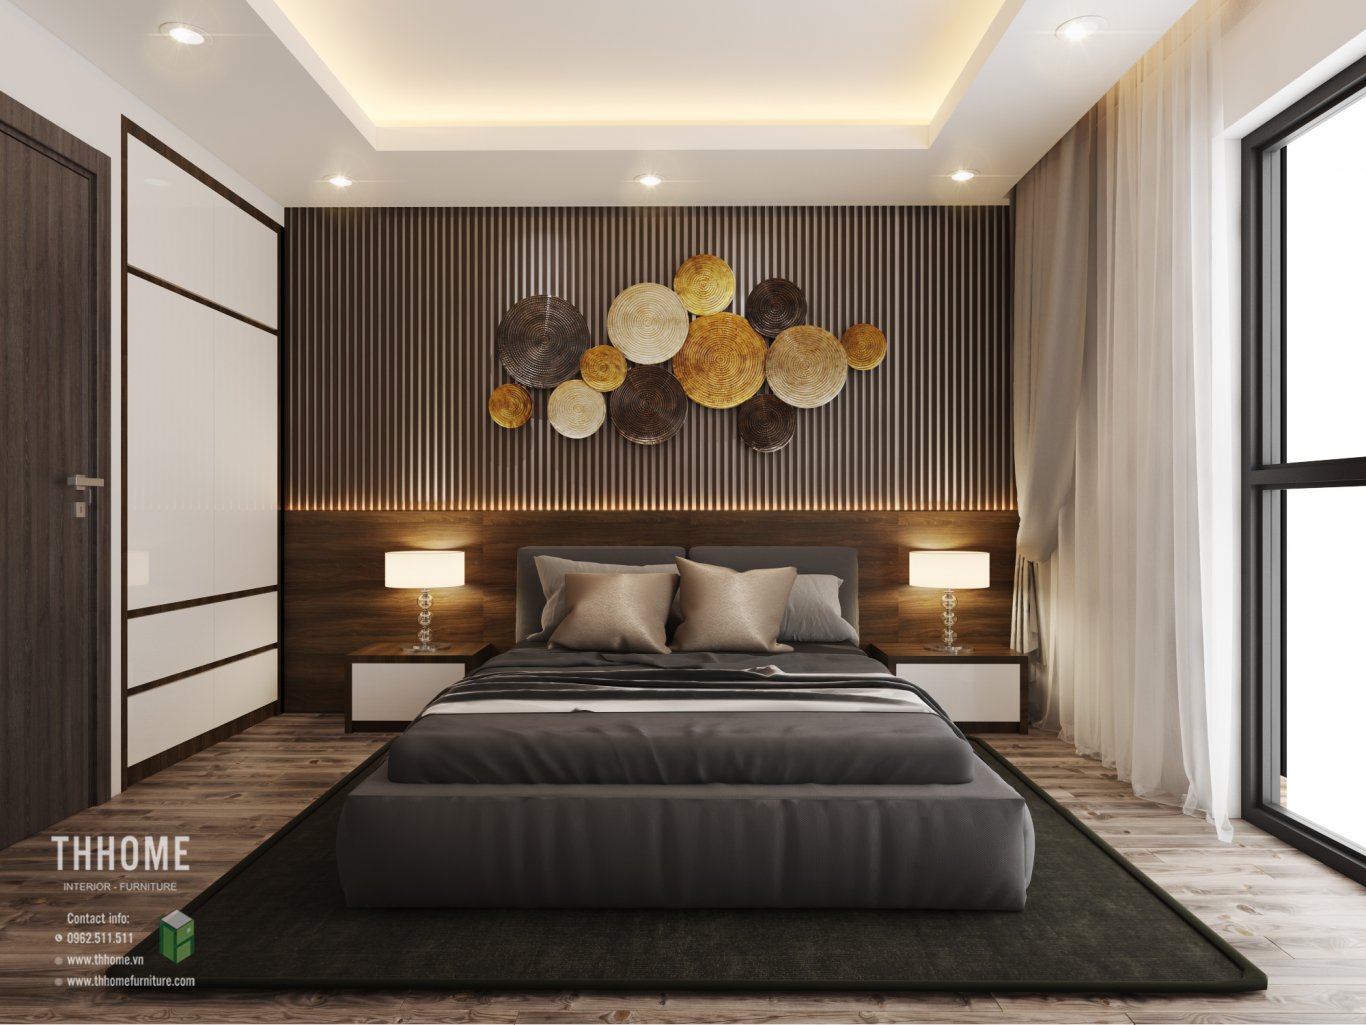 màu sắc trong thiết kế nội thất phong cách hiện đại cho phòng ngủ